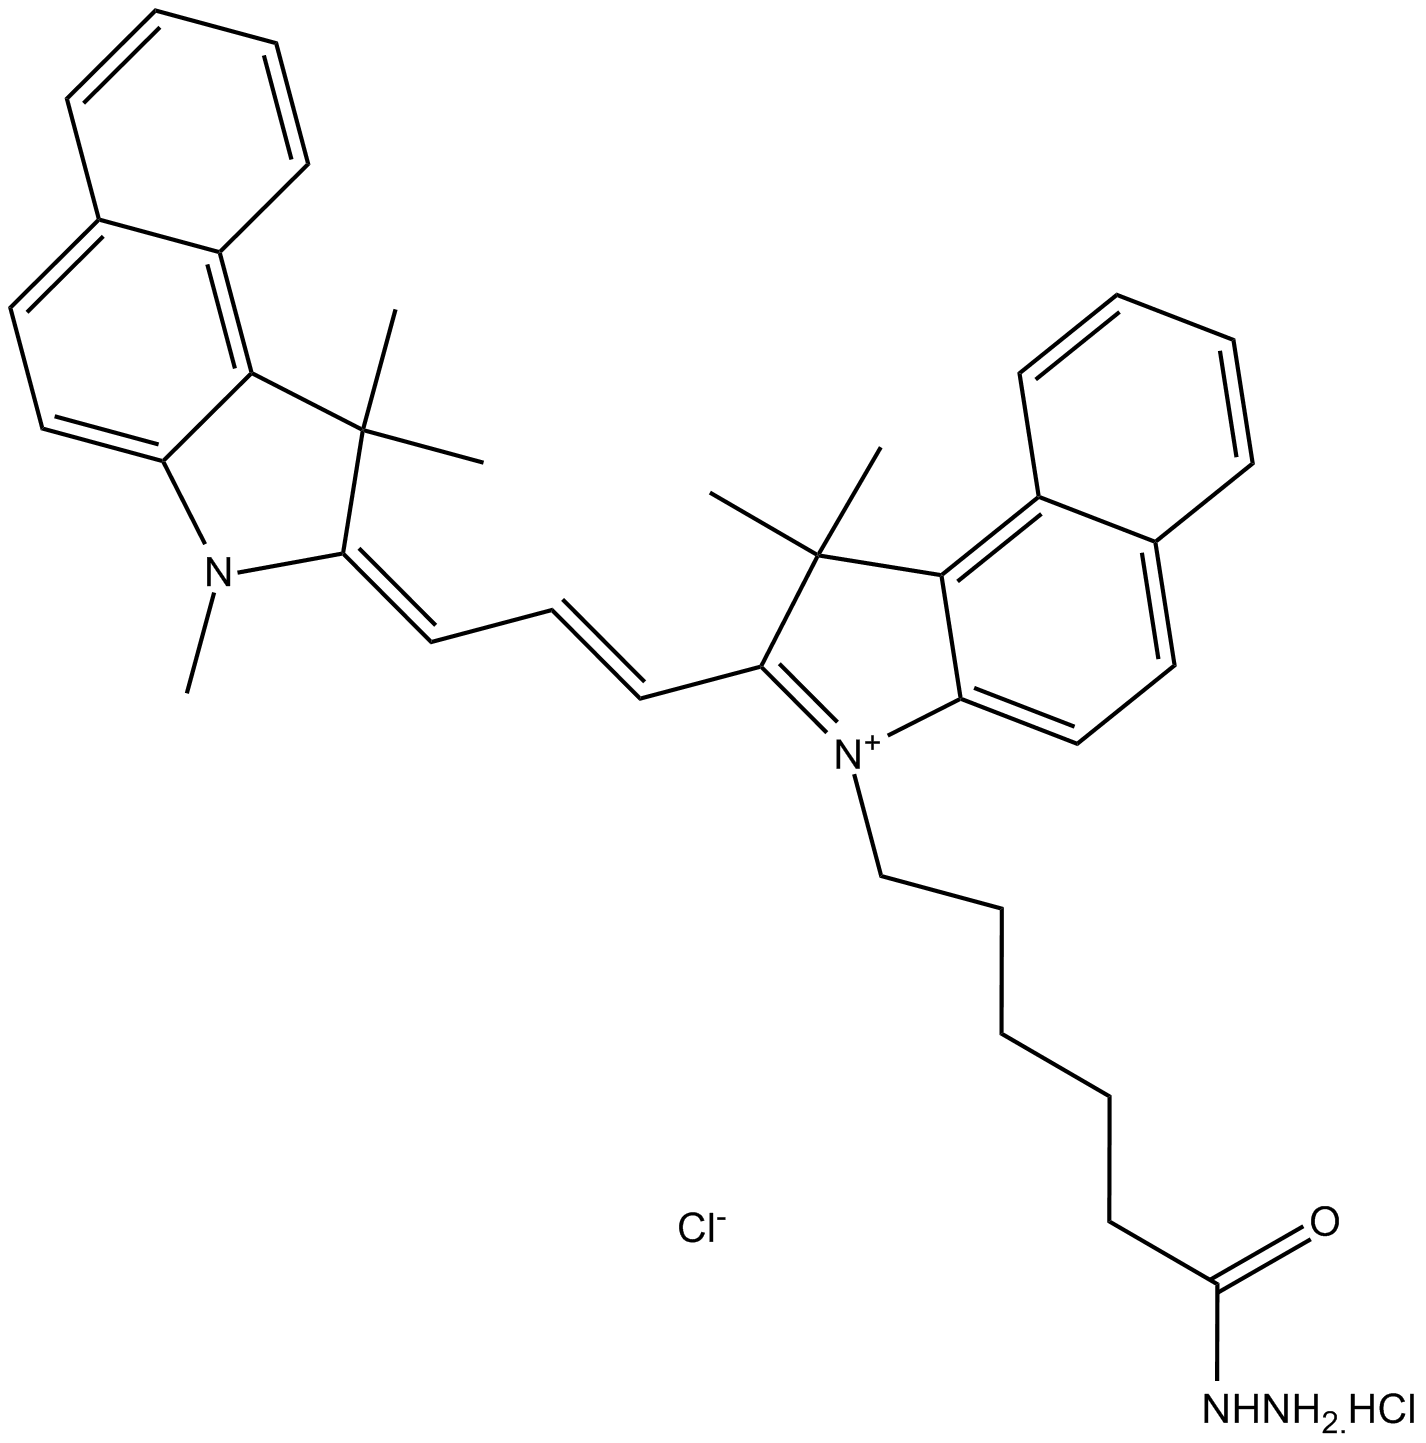 Cy3.5 hydrazide (non-sulfonated)